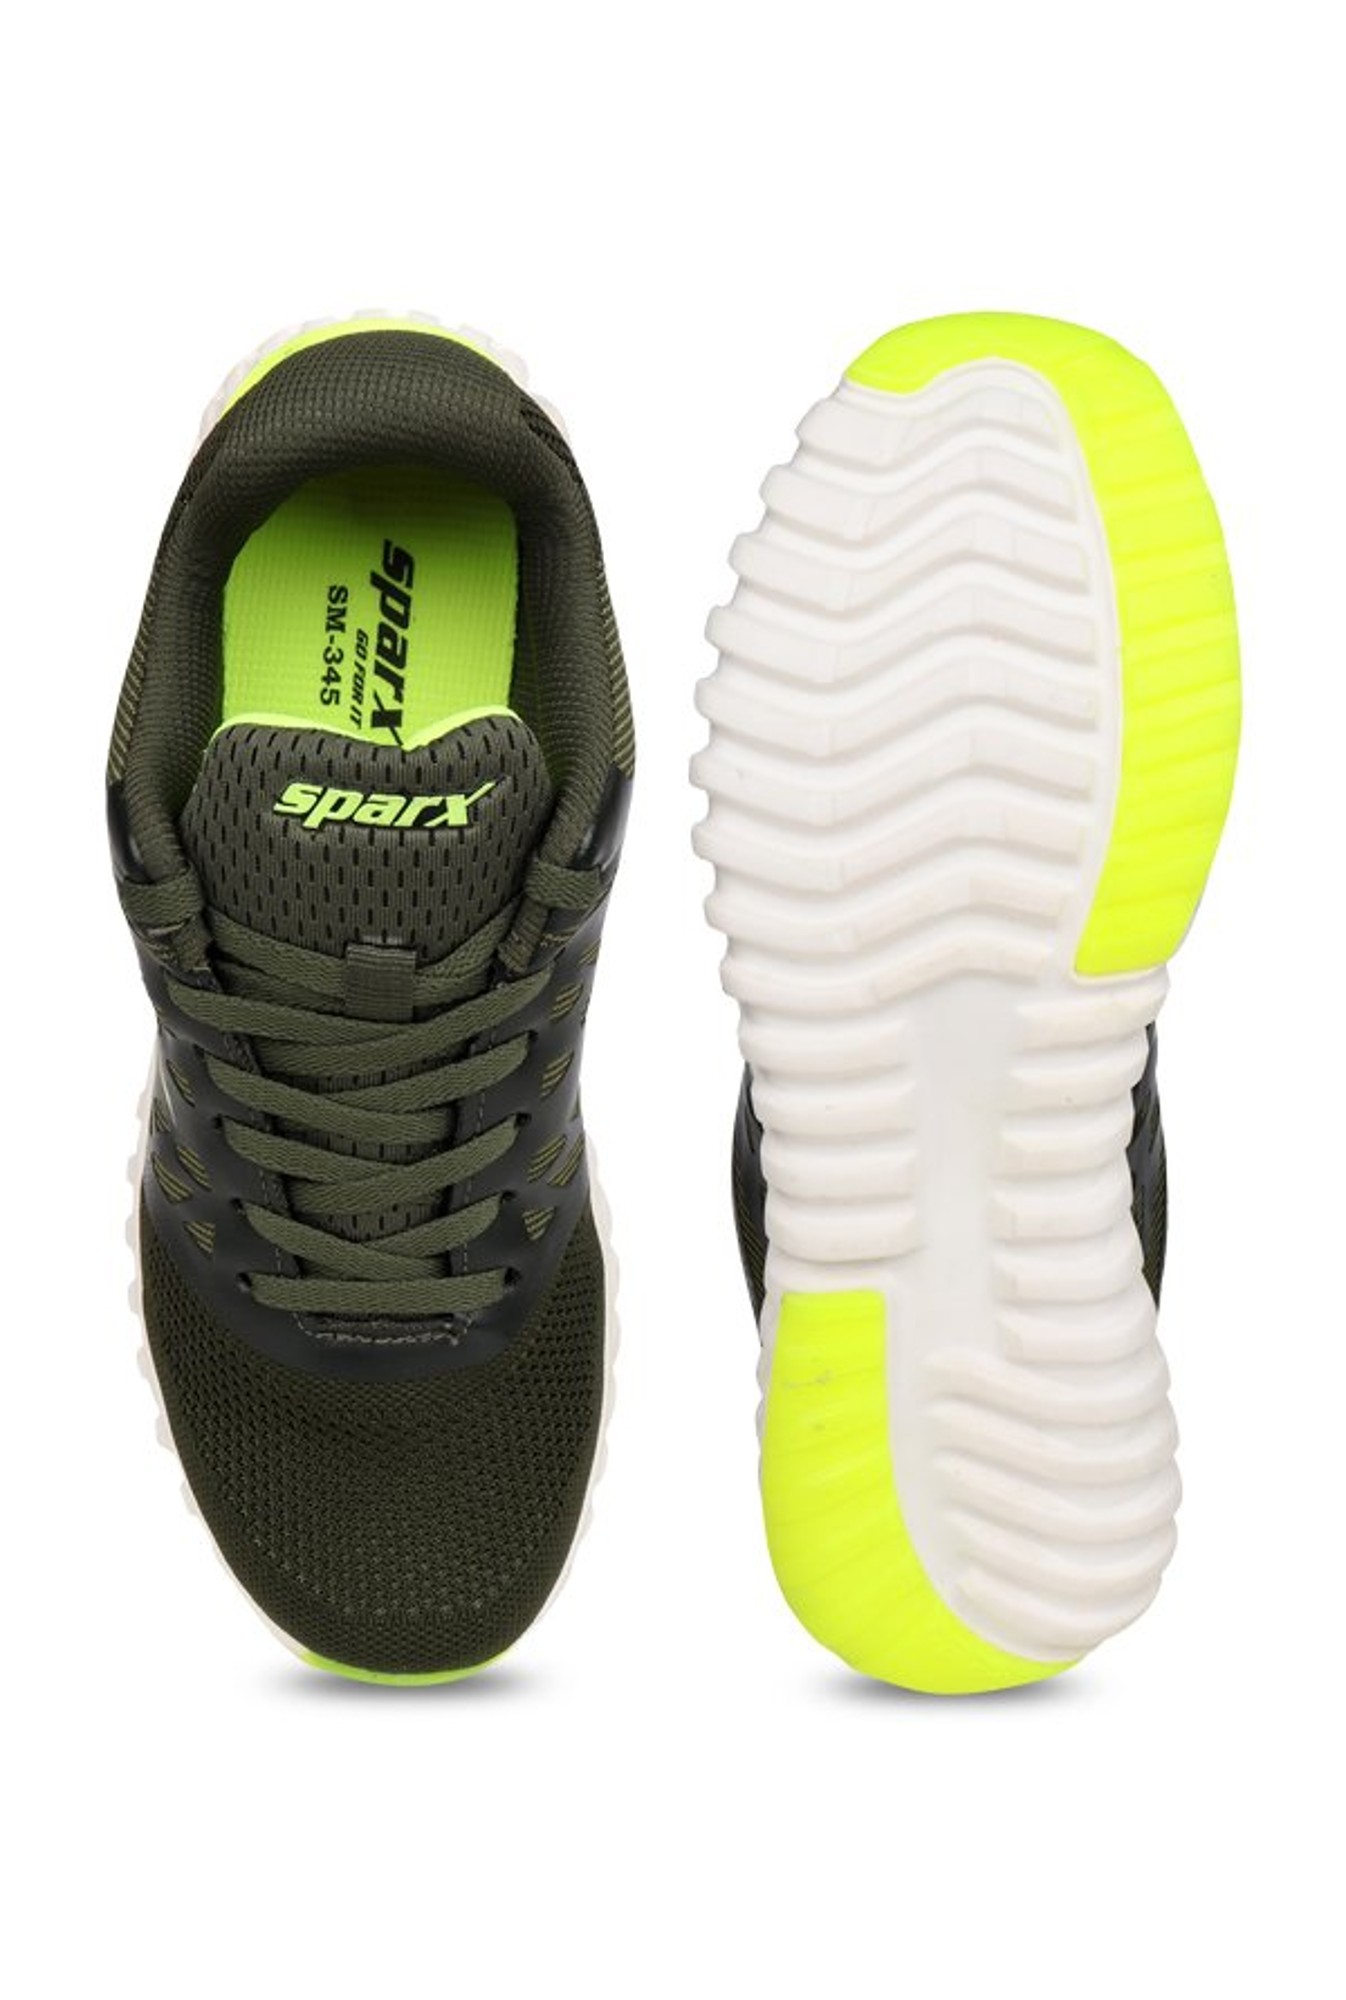 sparx shoes 345